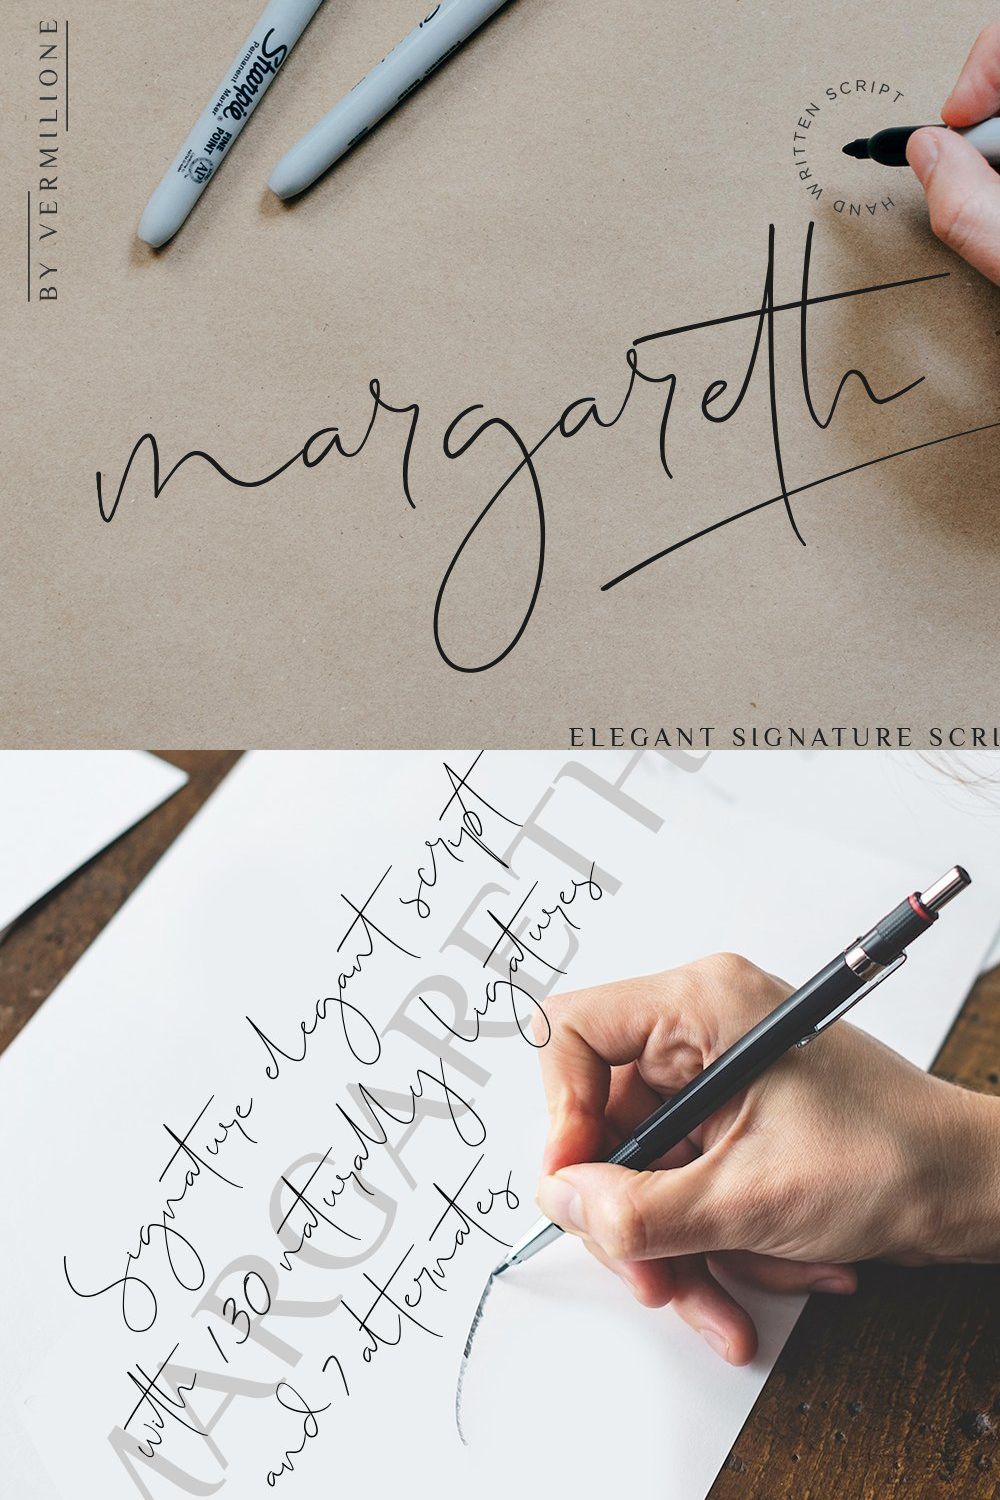 margareth elegant signature script pinterest preview image.